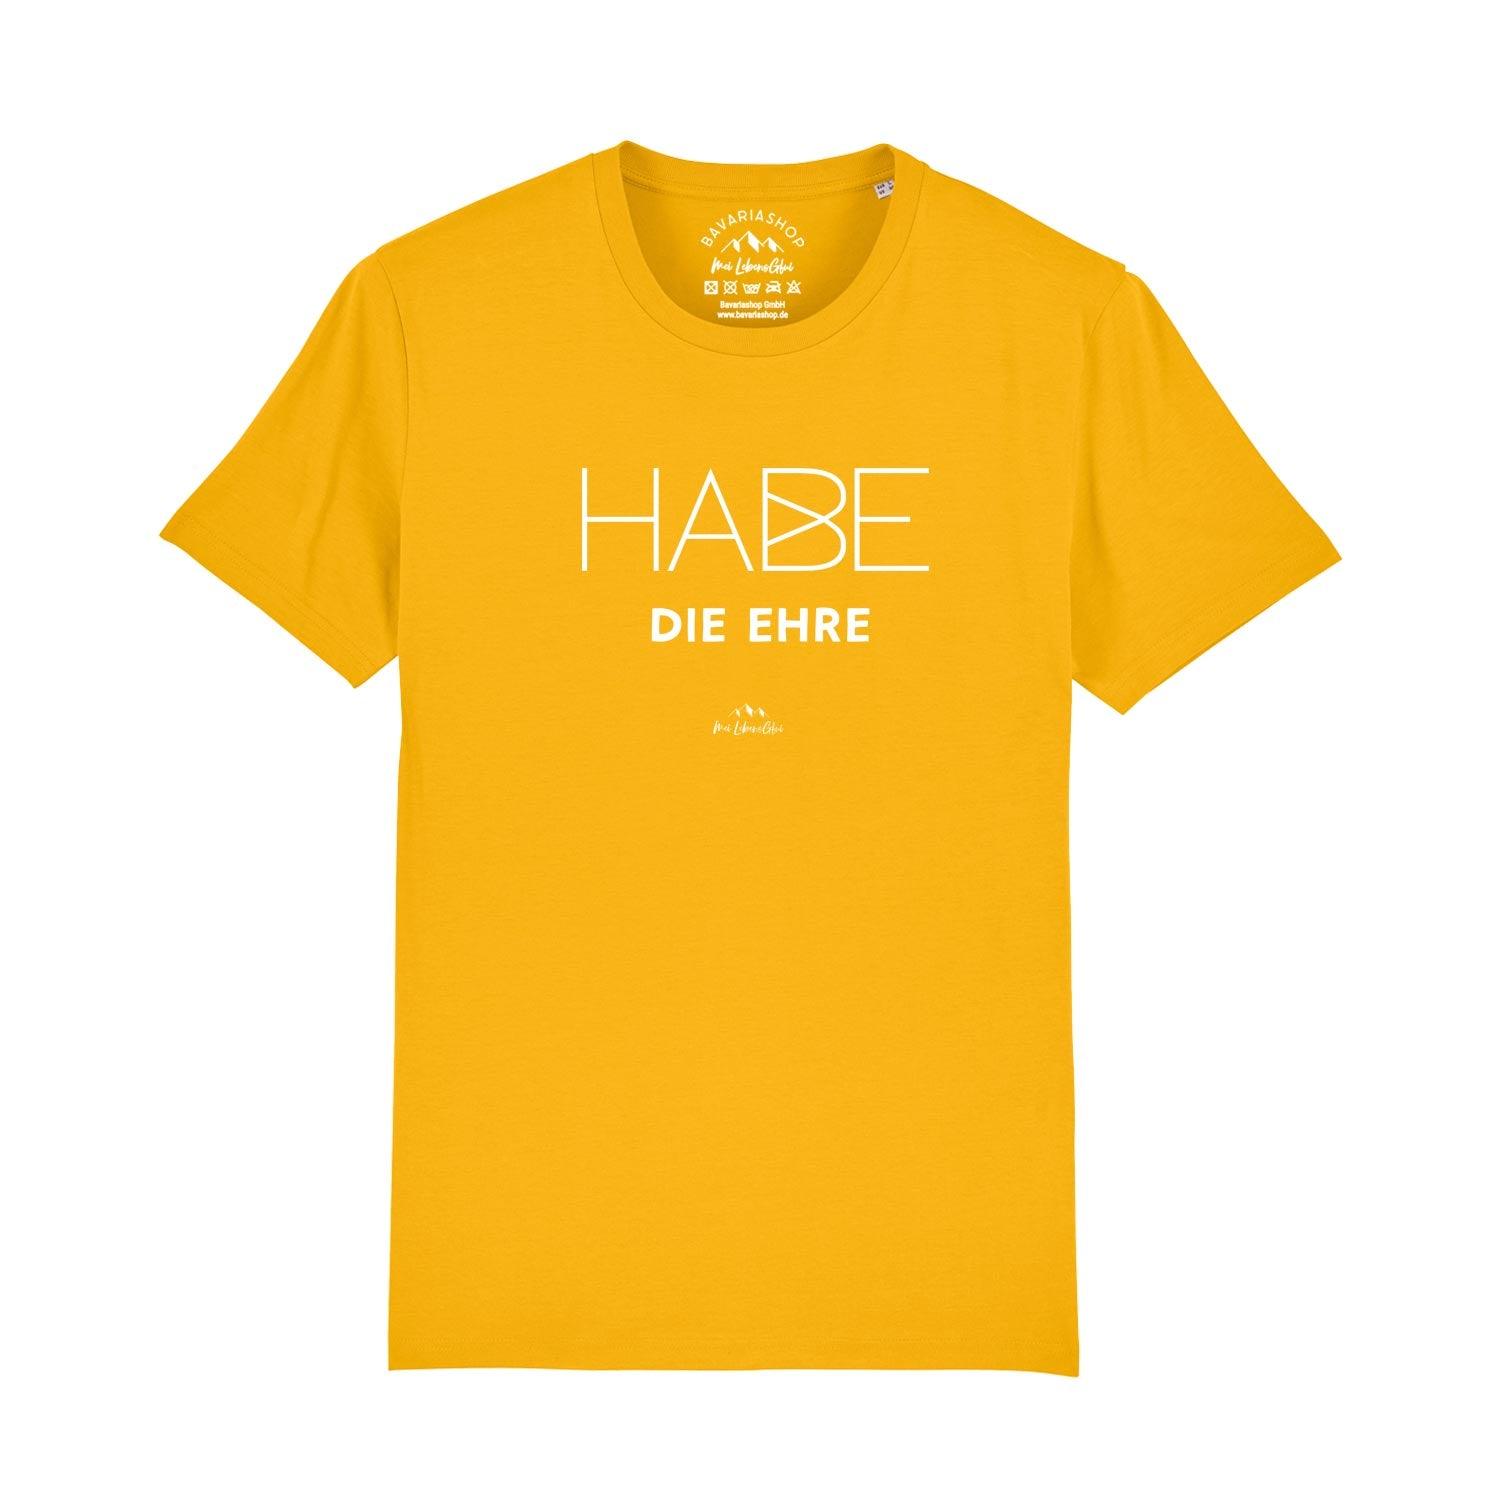 Herren T-Shirt "Habe die Ehre" - bavariashop - mei LebensGfui